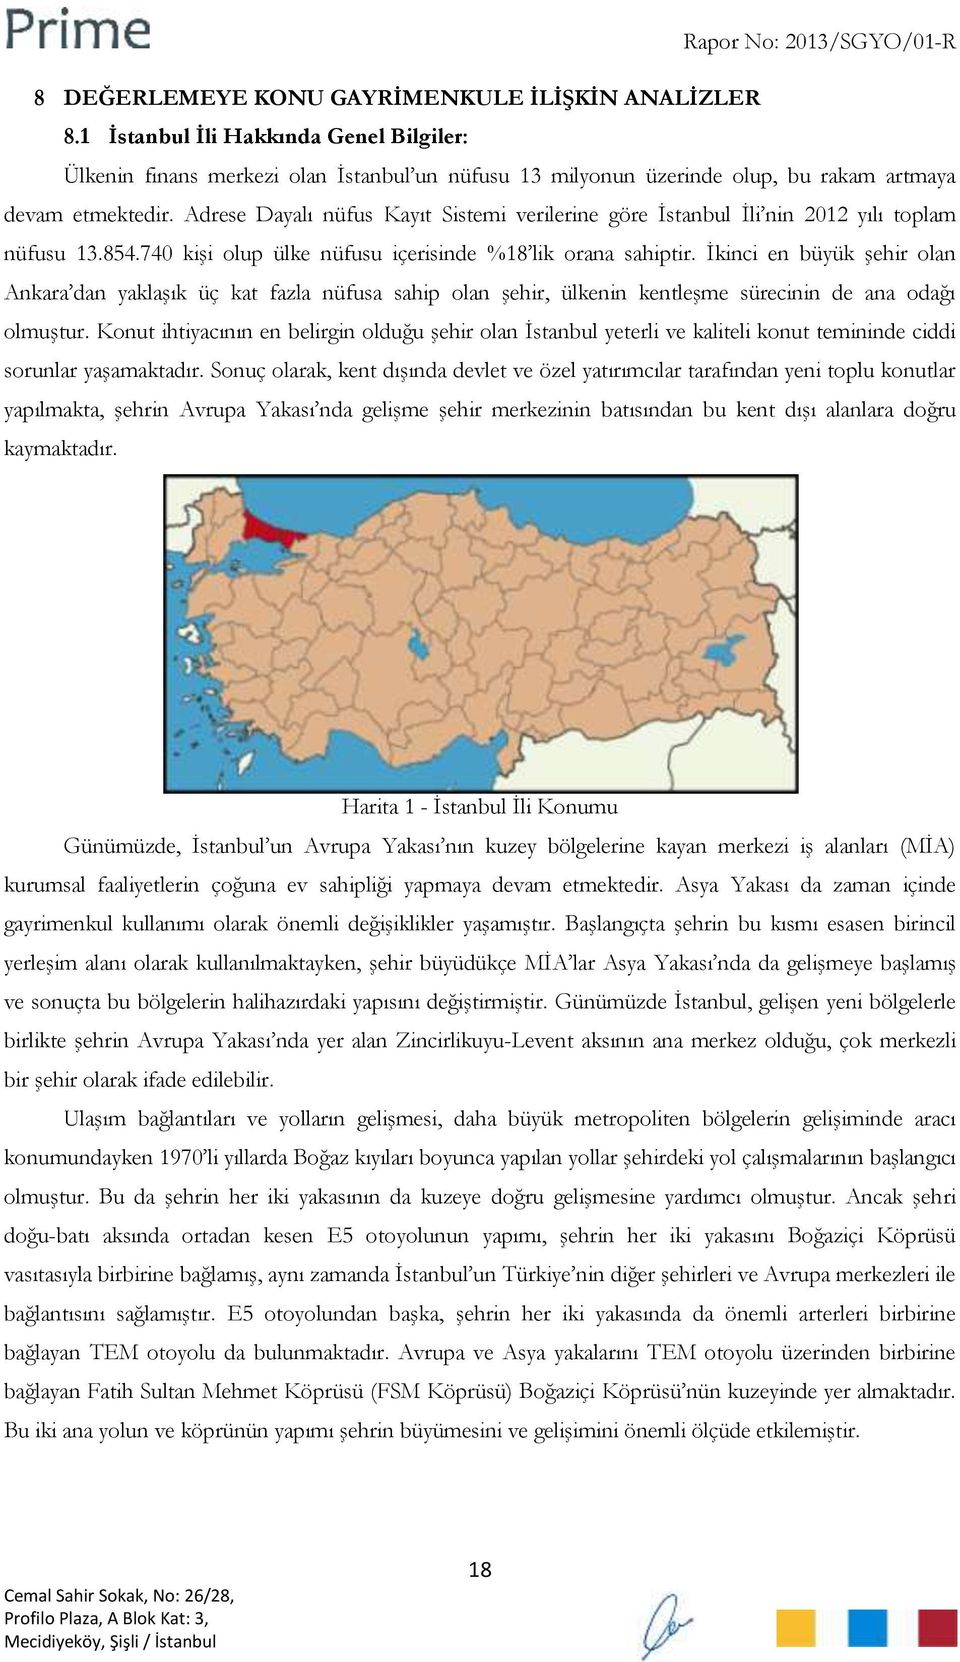 İkinci en büyük şehir olan Ankara dan yaklaşık üç kat fazla nüfusa sahip olan şehir, ülkenin kentleşme sürecinin de ana odağı olmuştur.